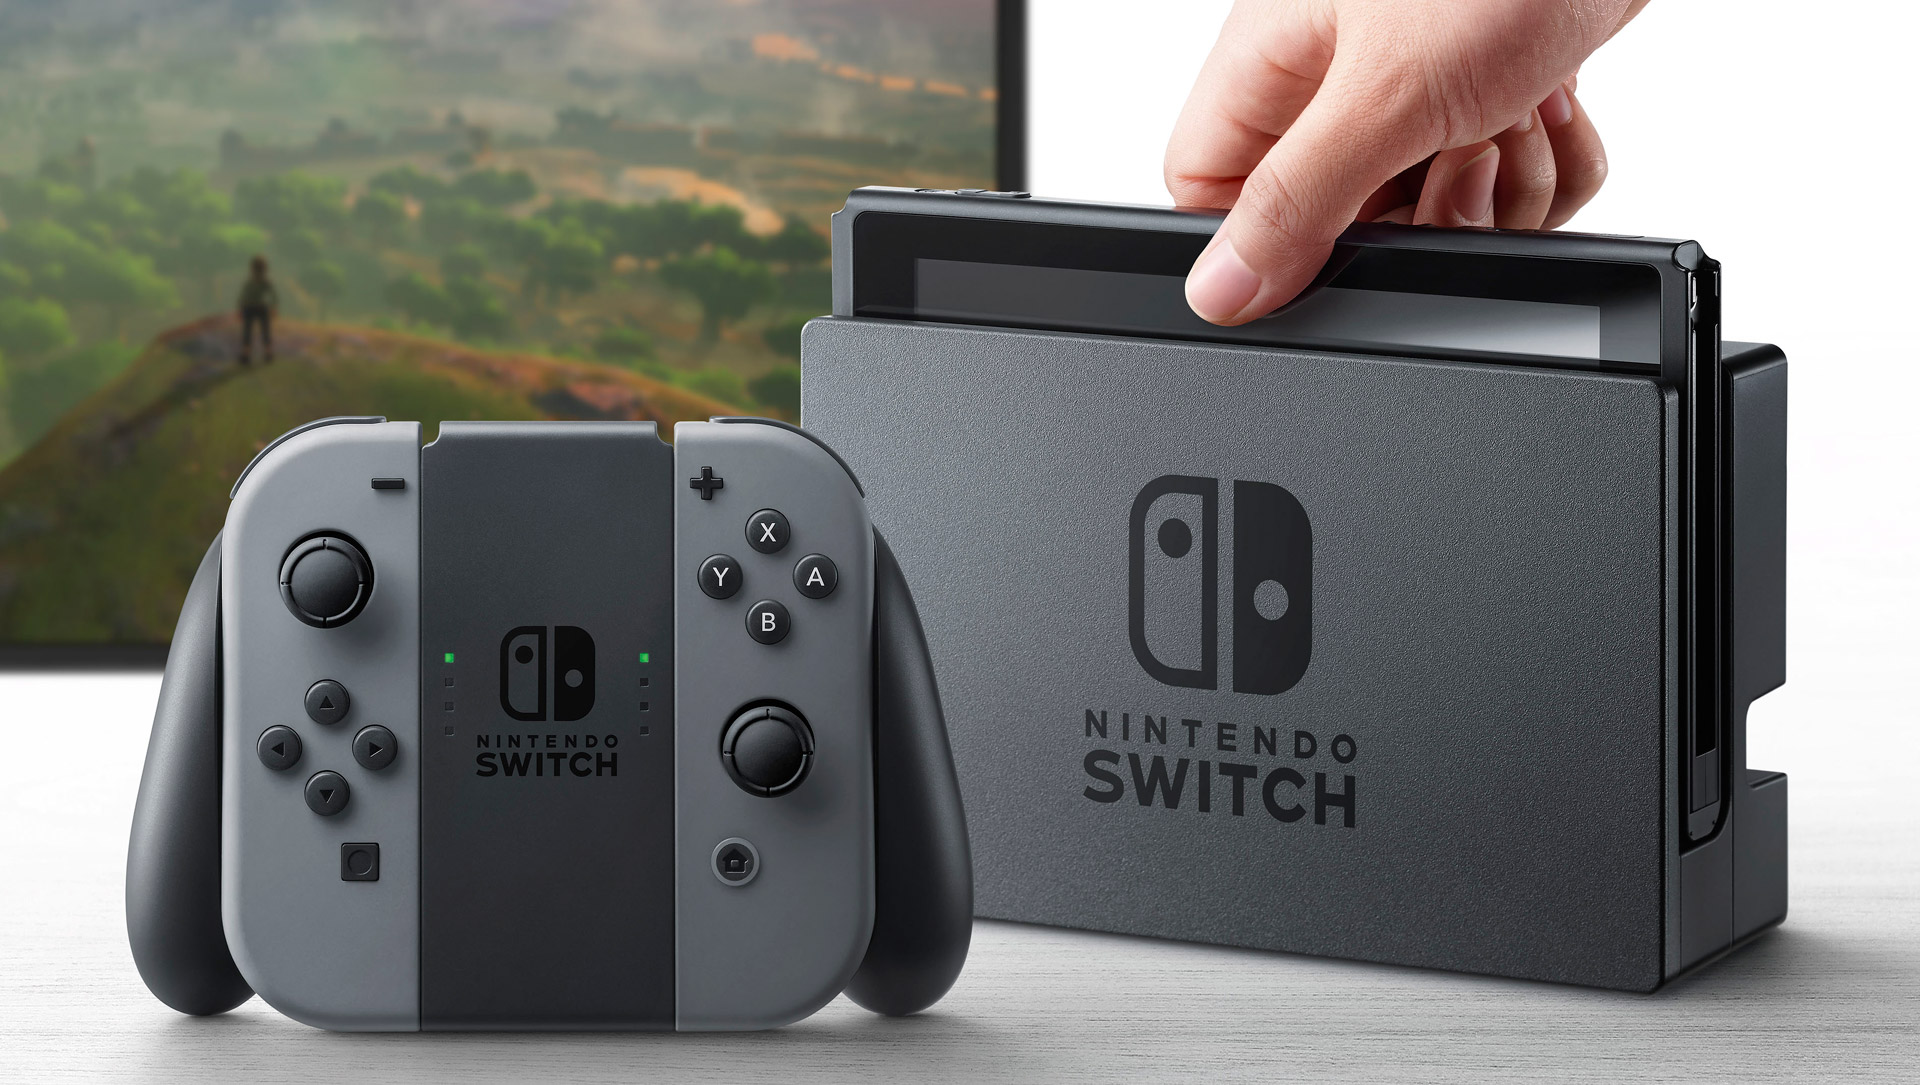 Se estiman que las ventas del Nintendo Switch serán de 5 millones en su primer año.